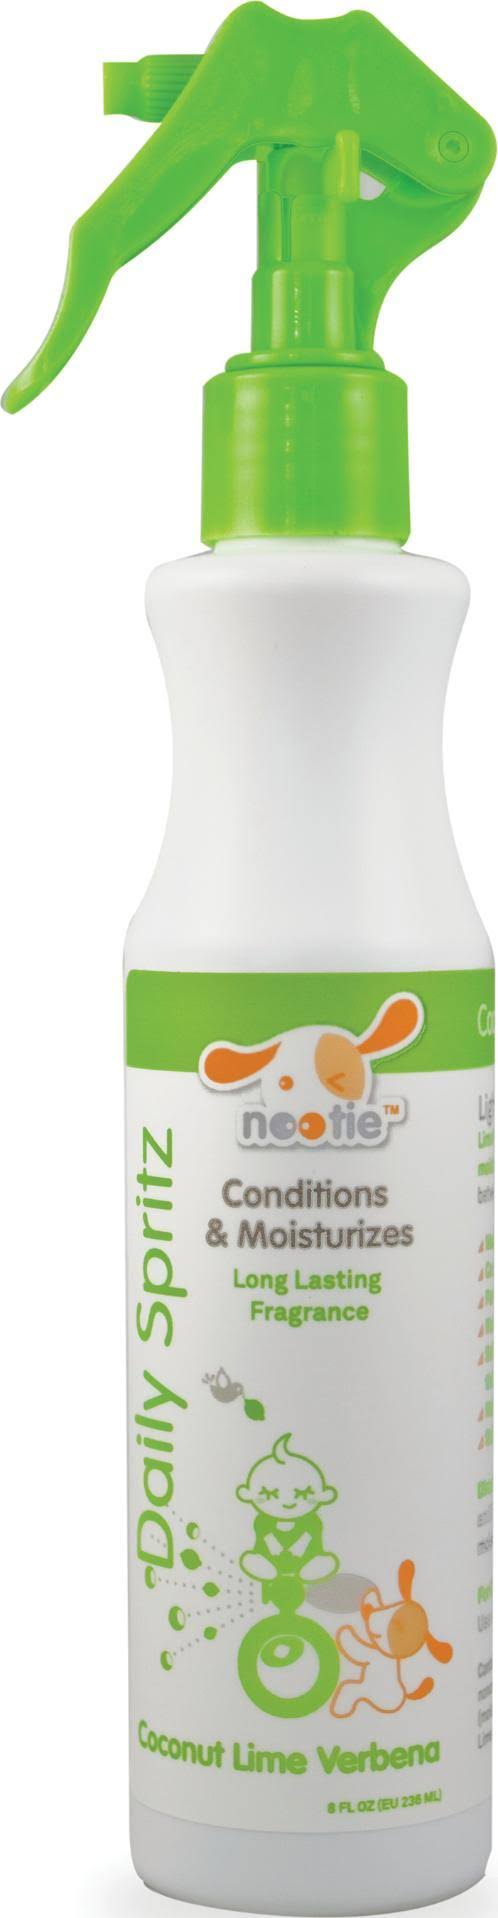 Nootie Daily Spritz Coconut Lime Verbena Pet Conditioning Spray - 8oz